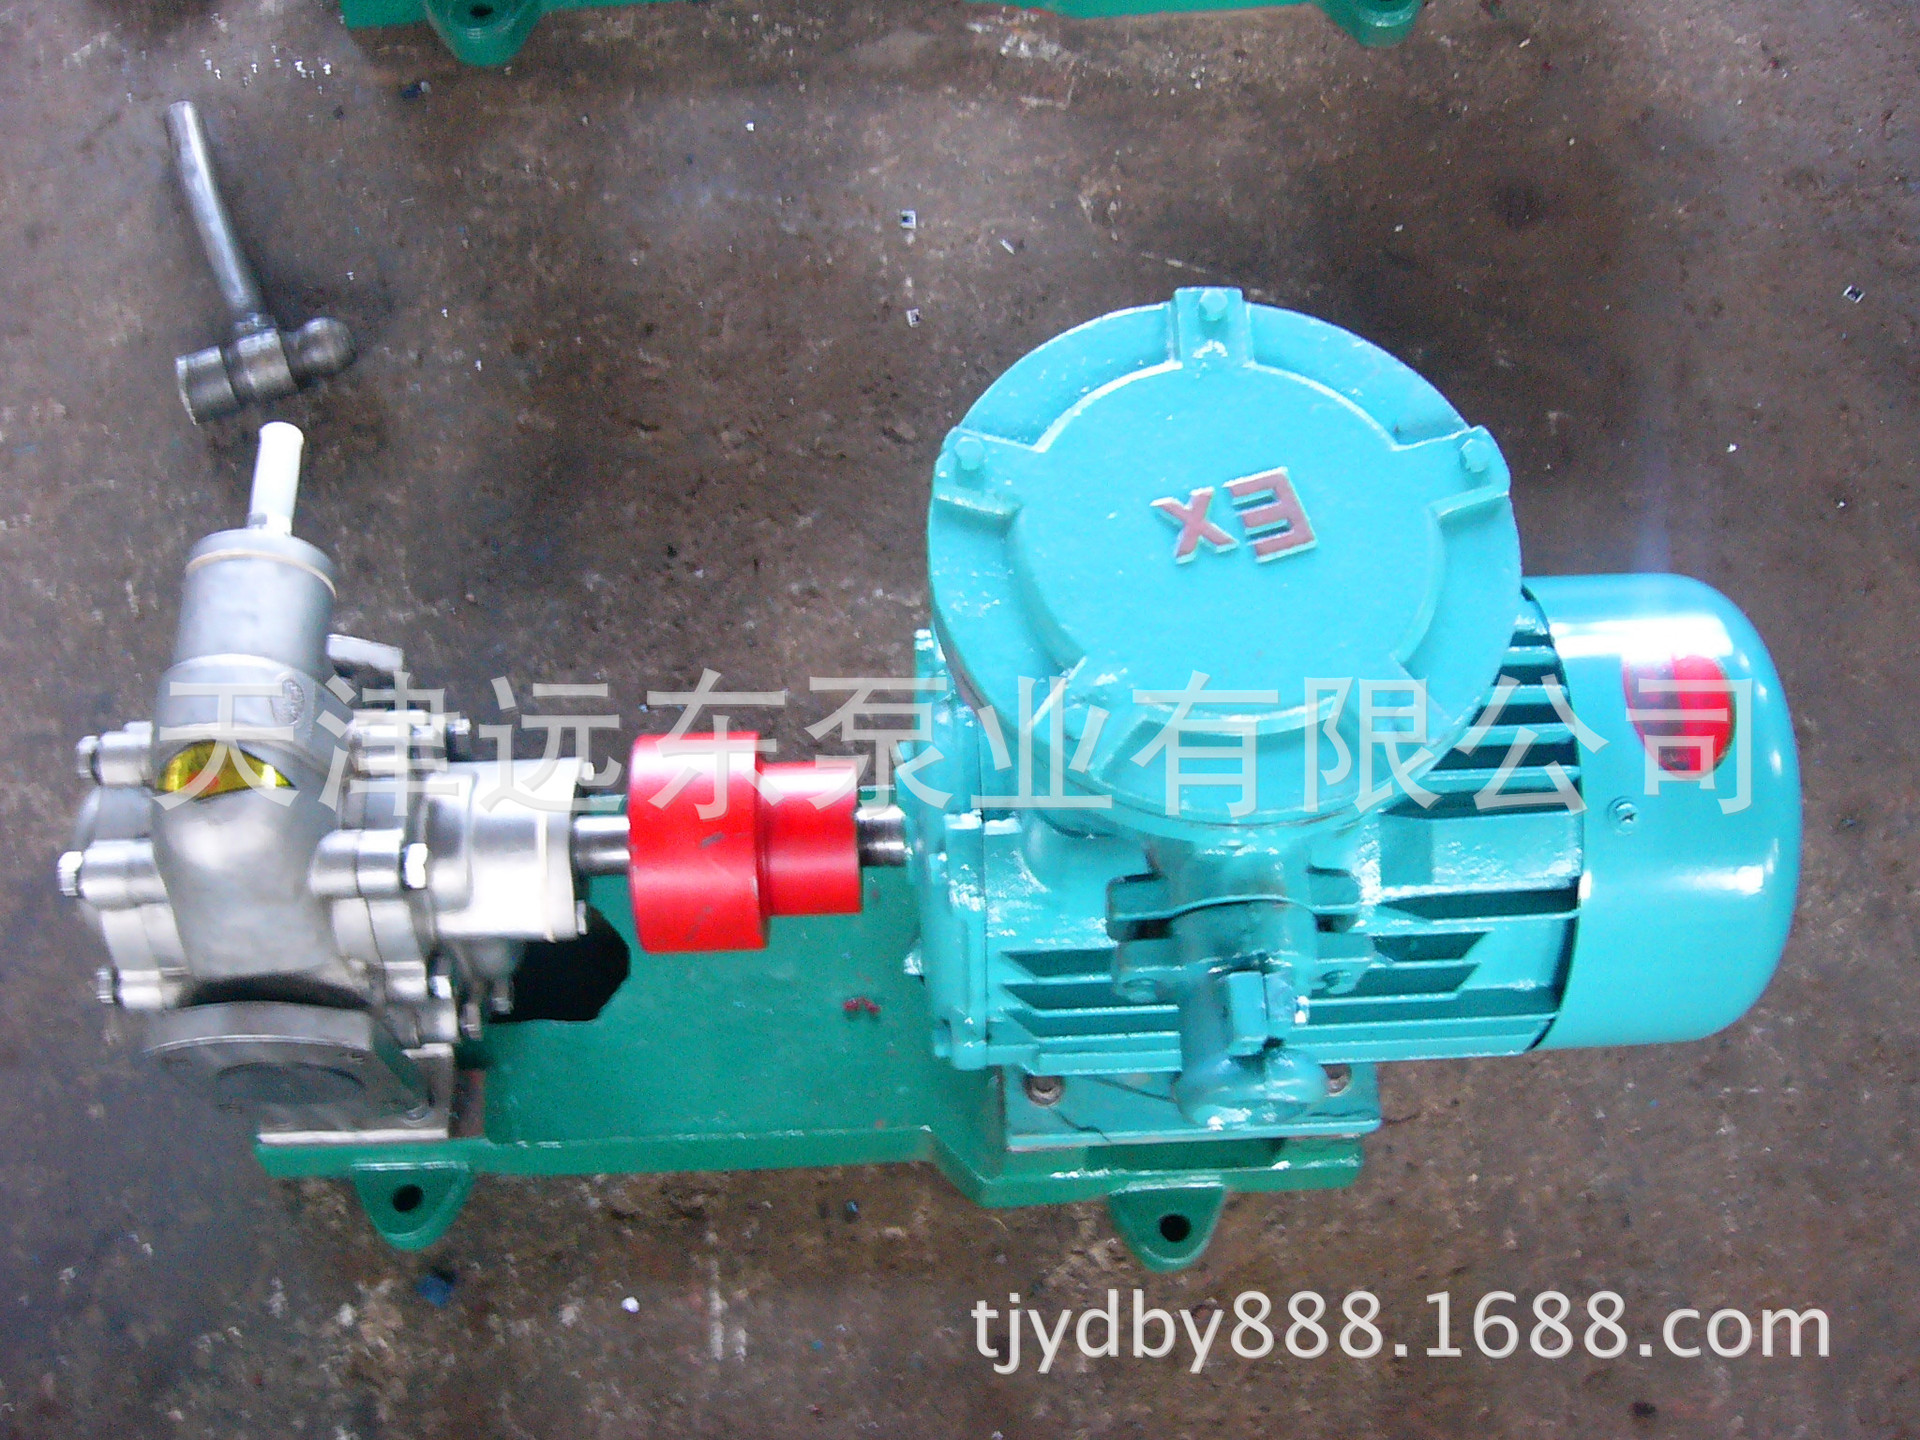 天津远东 KCB-200不锈钢齿轮泵 食品油输送泵 远东齿轮泵厂家直销示例图3